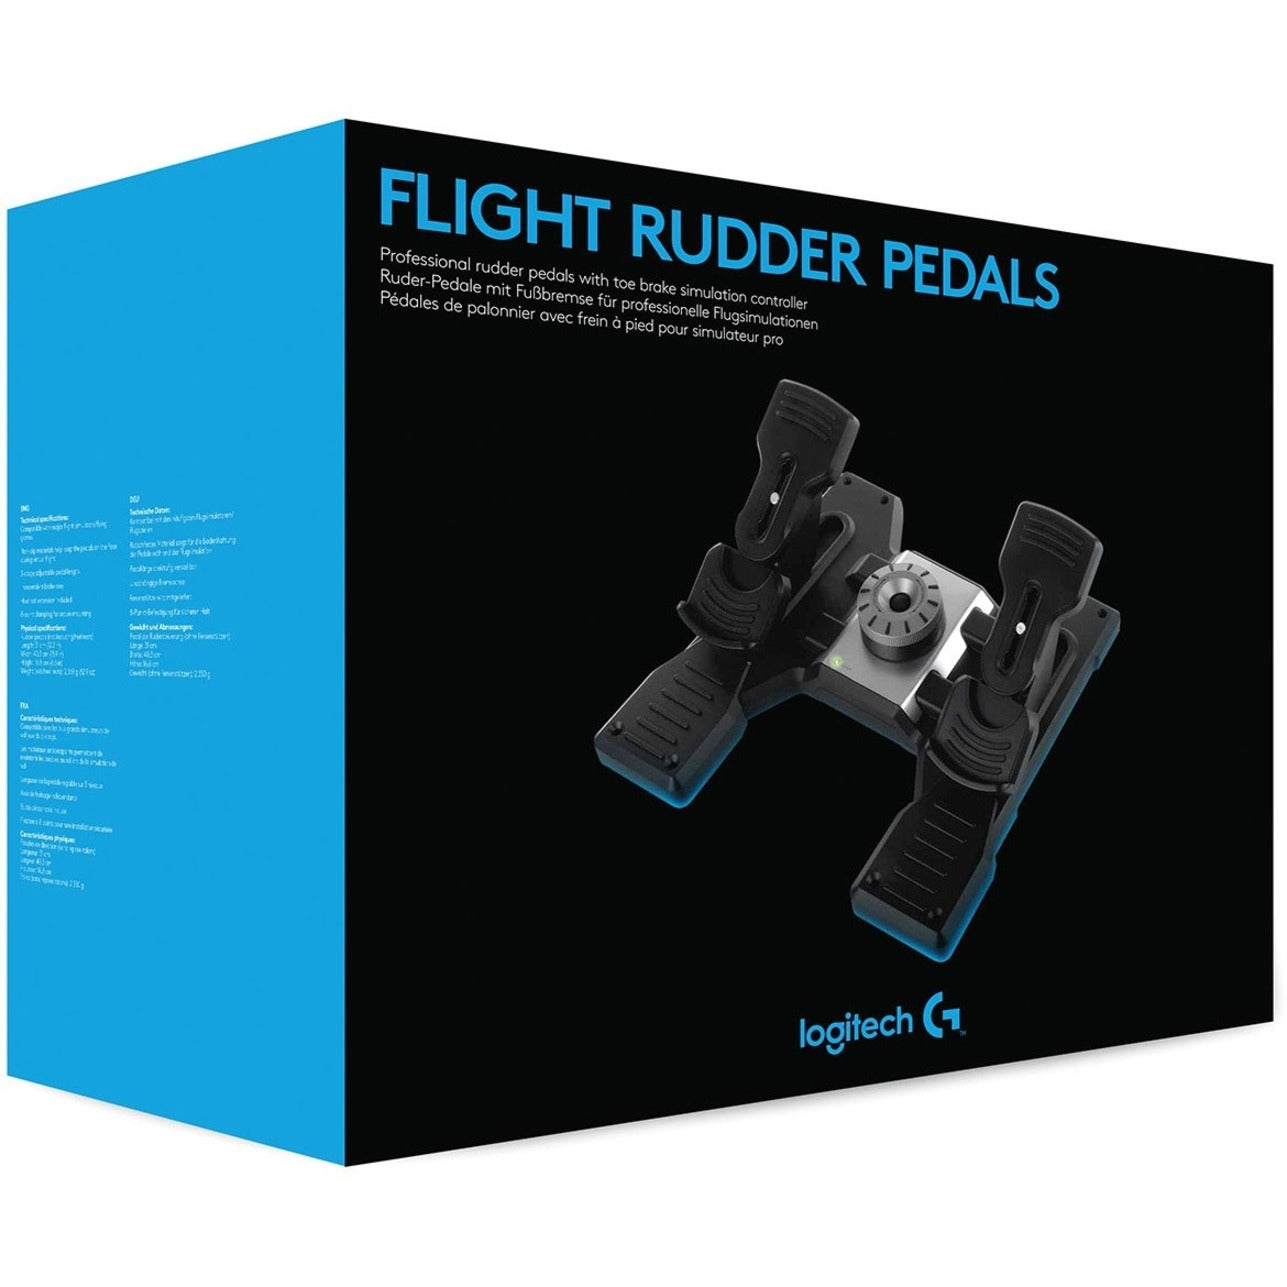  Logitech G USB PRO Flight Rudder Pedals : Video Games